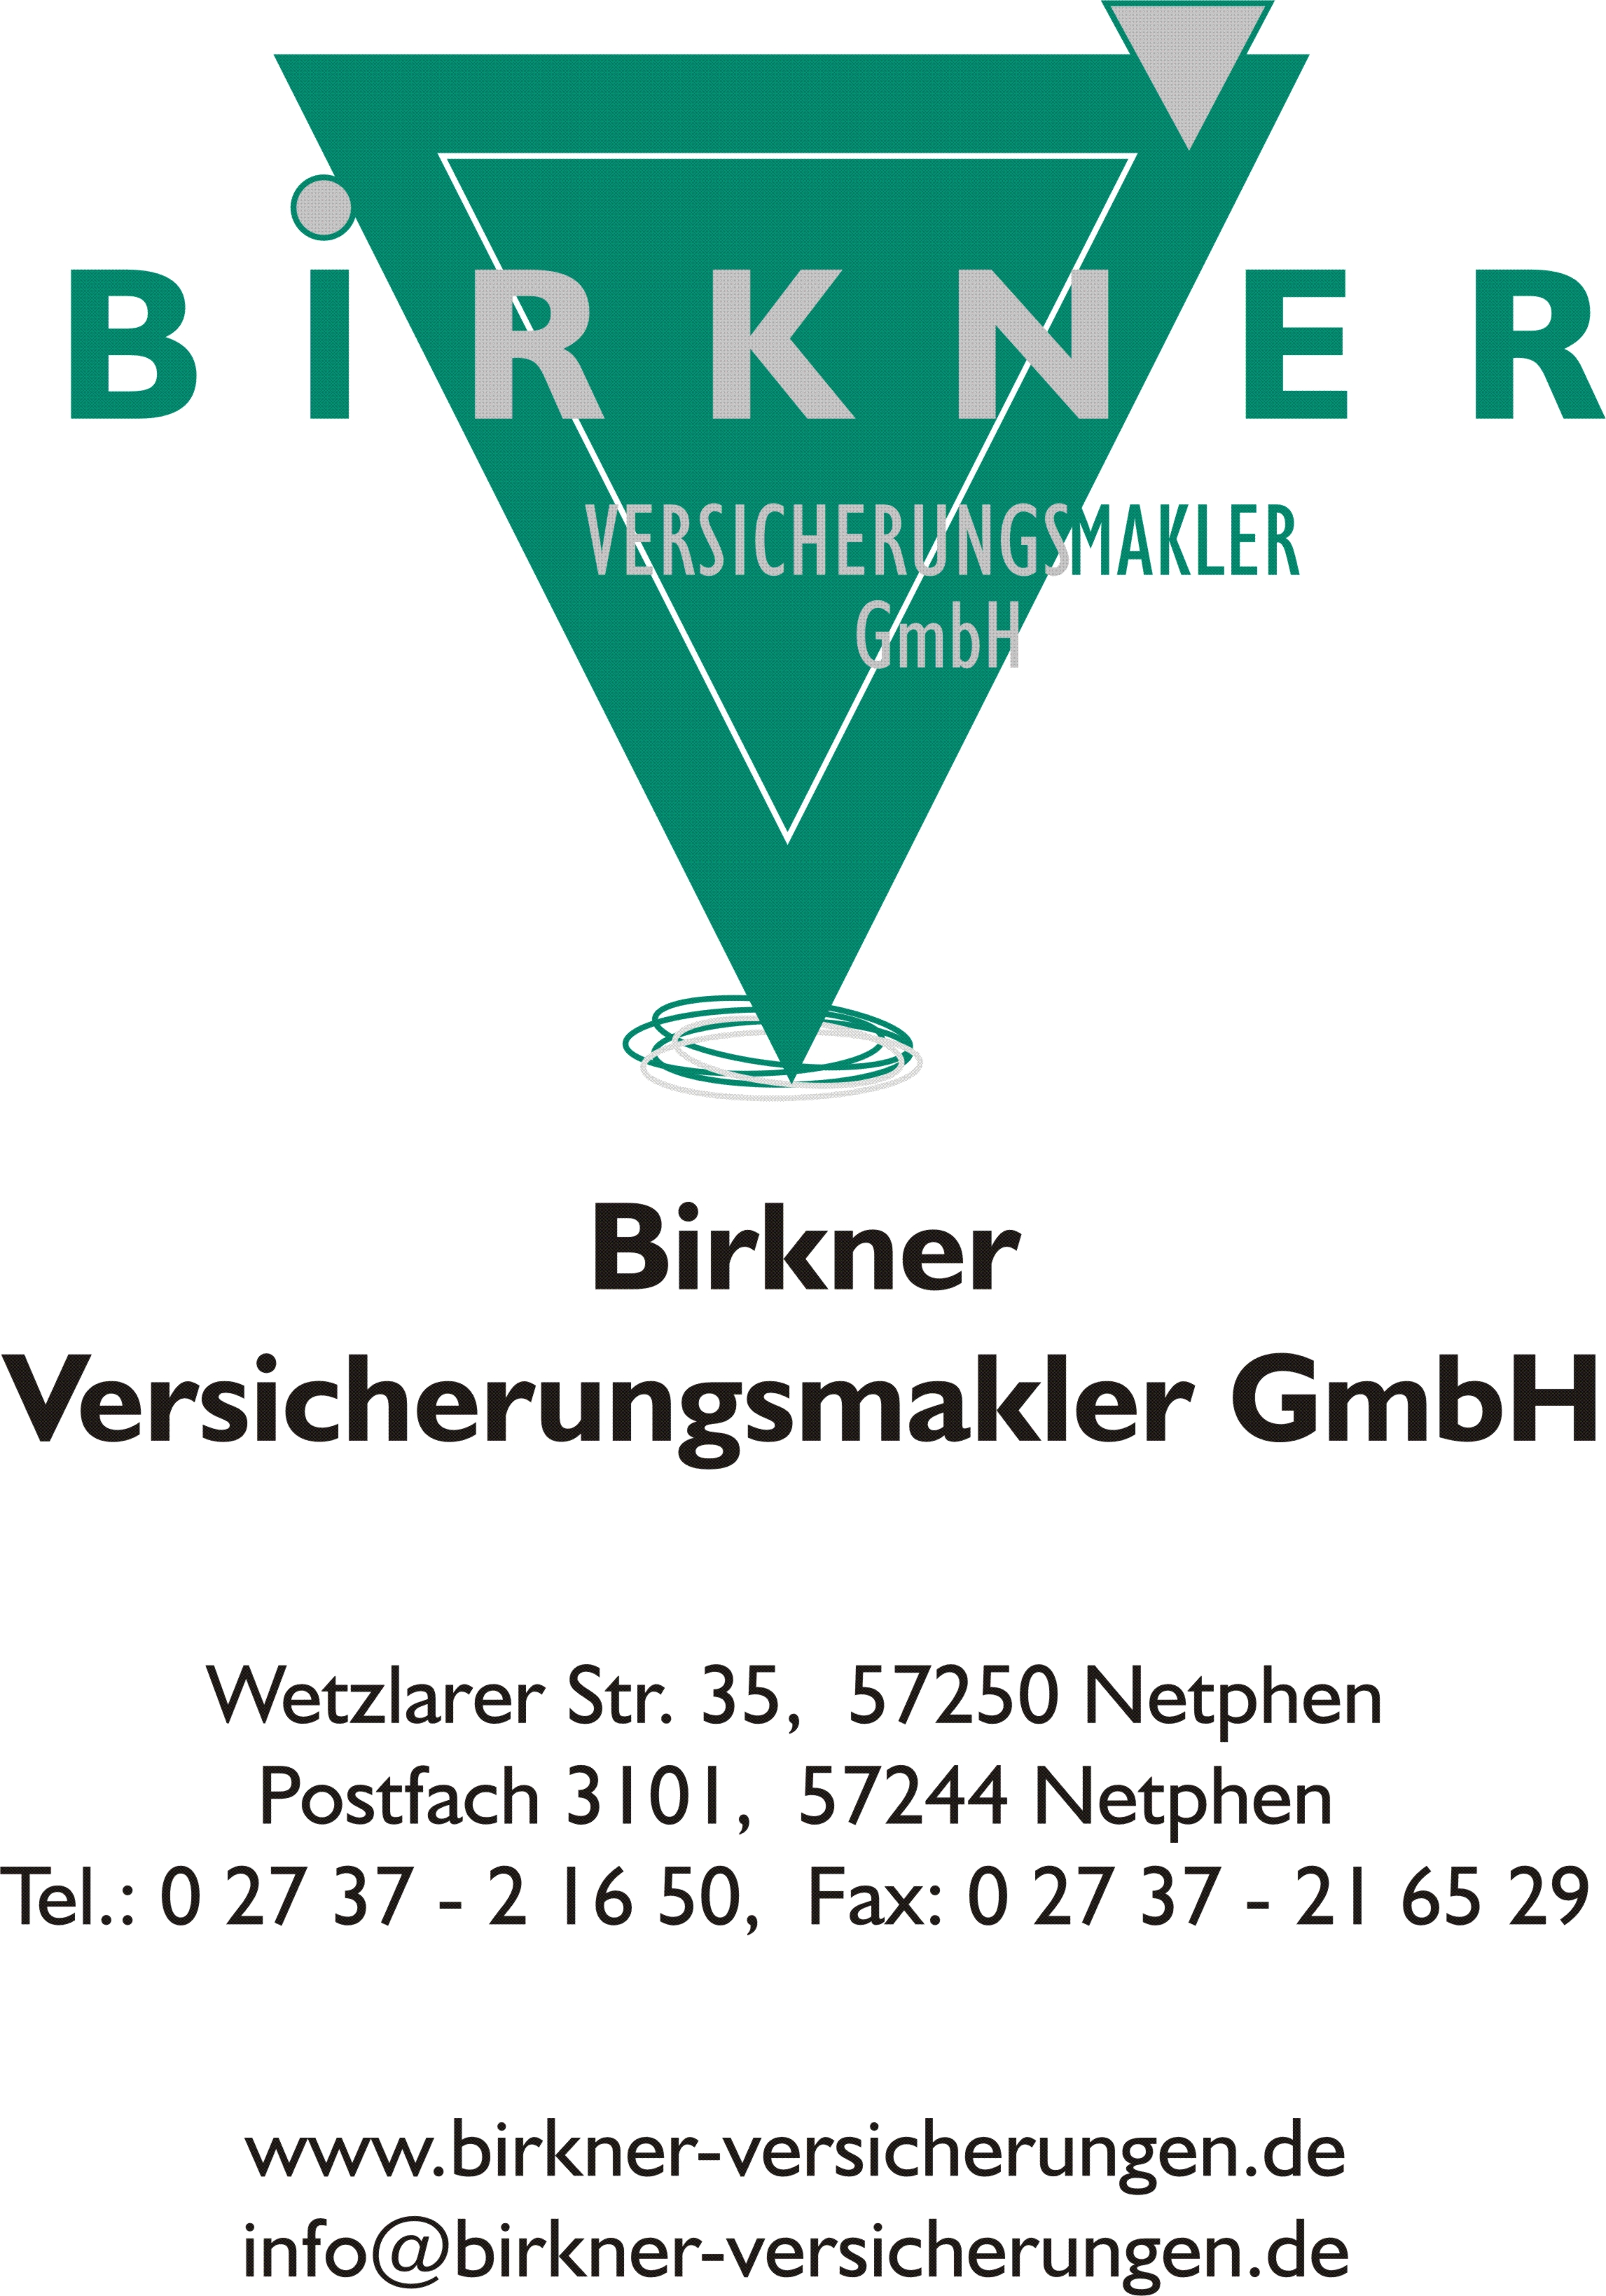 Birkner+Logo+2012+neu